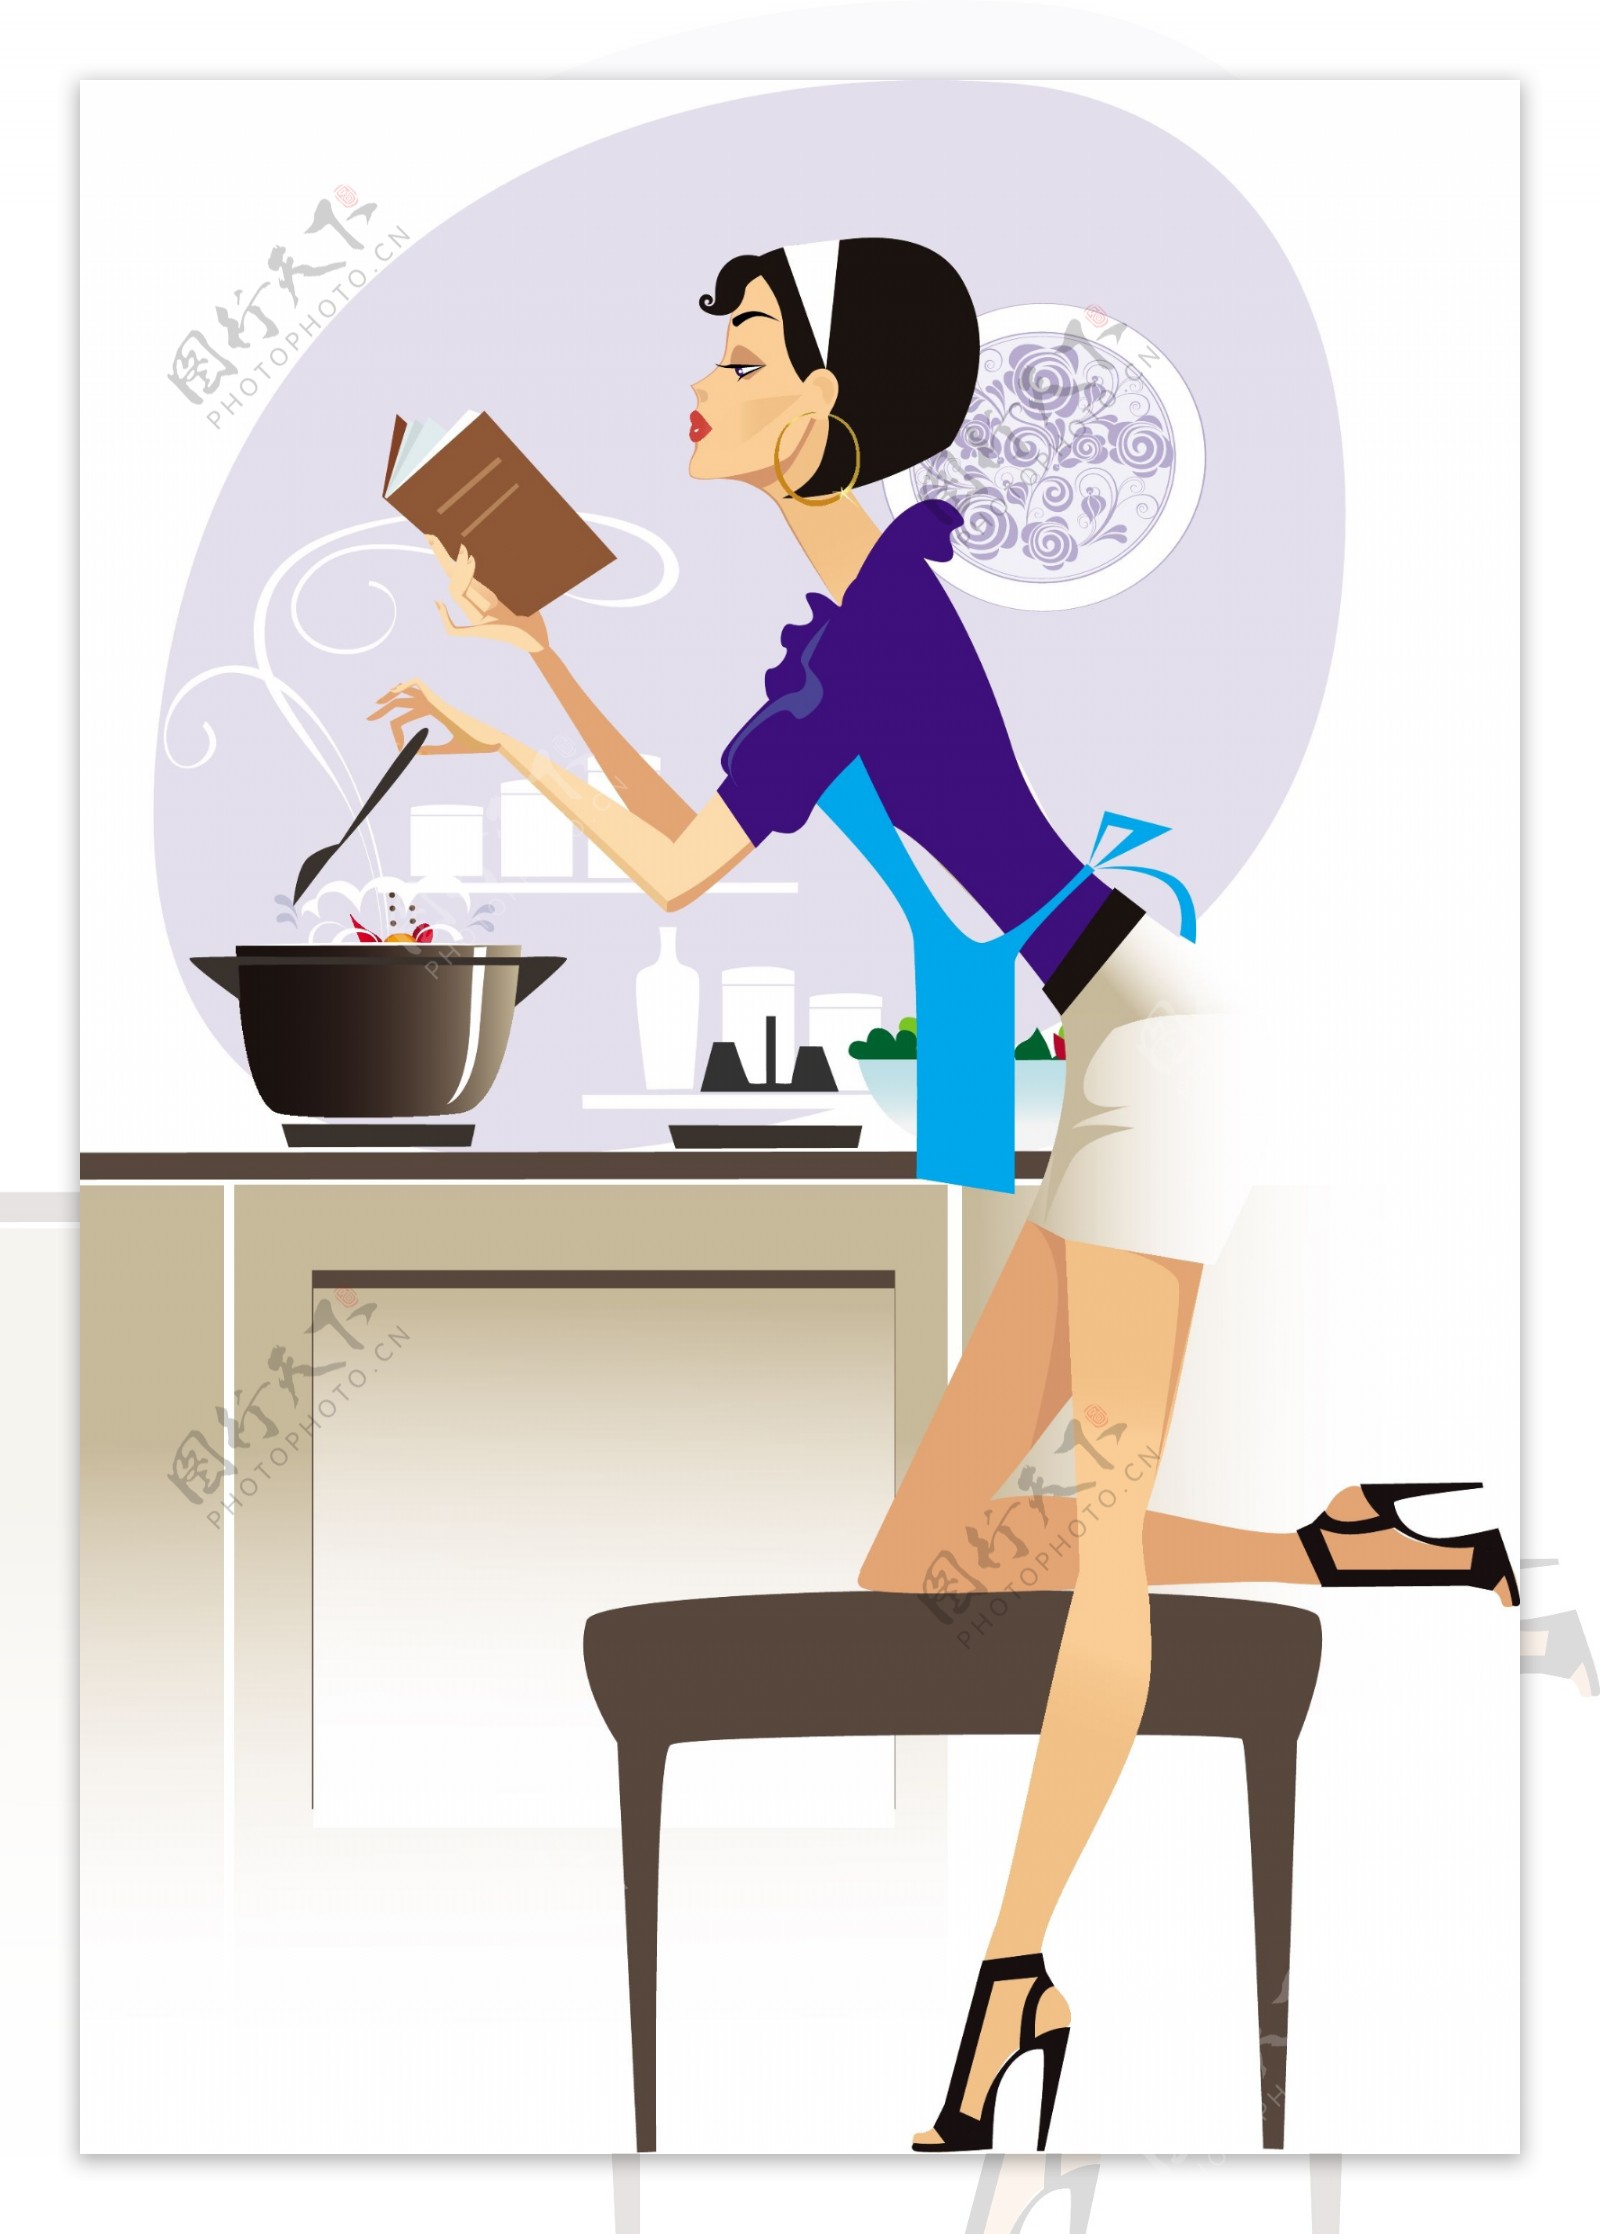 女人在厨房里做饭 库存图片. 图片 包括有 生活方式, 健康, 礼服, 管理, 内部, 膳食, 杓子, 国内 - 177528291